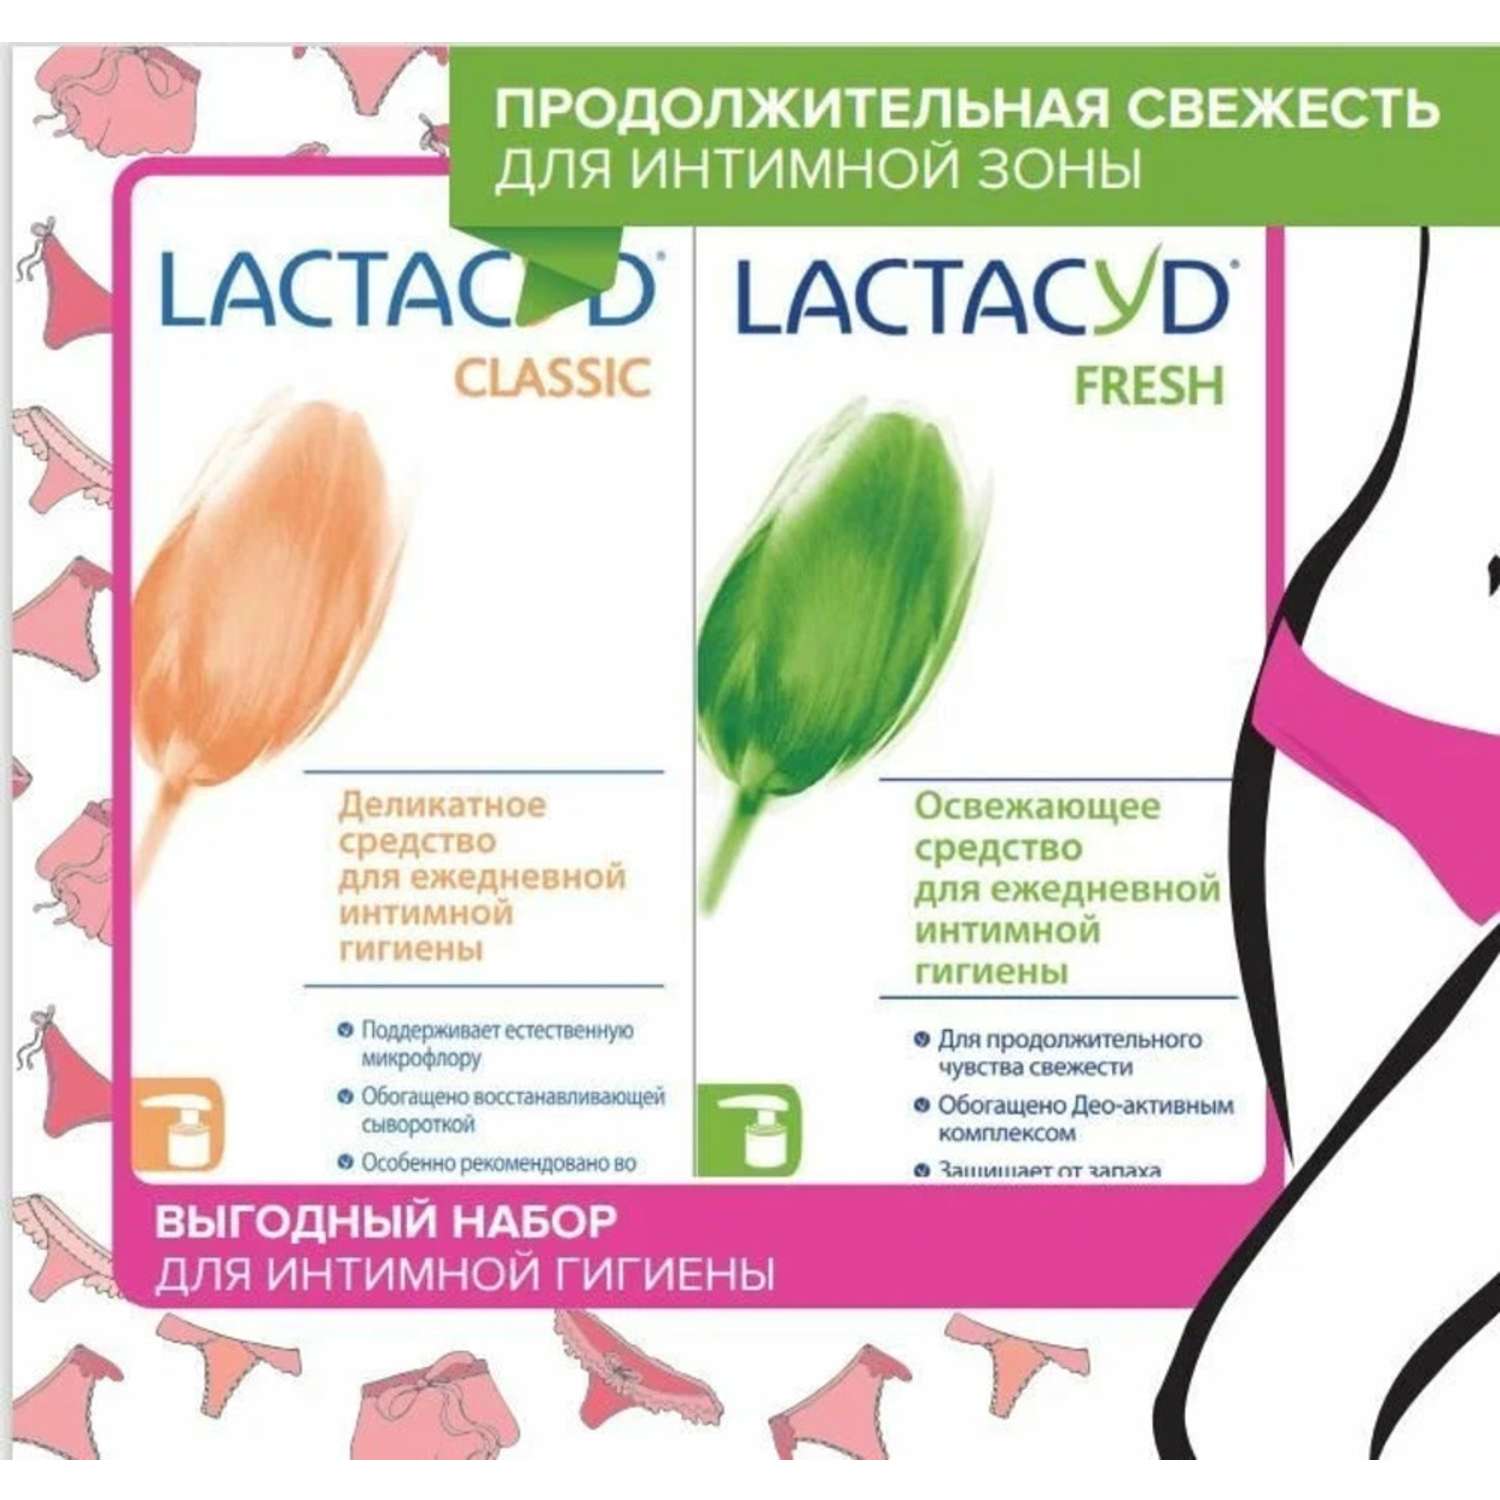 Набор Lactacyd для интимной гигиены «Продолжительная свежесть для интимной зоны» - фото 1